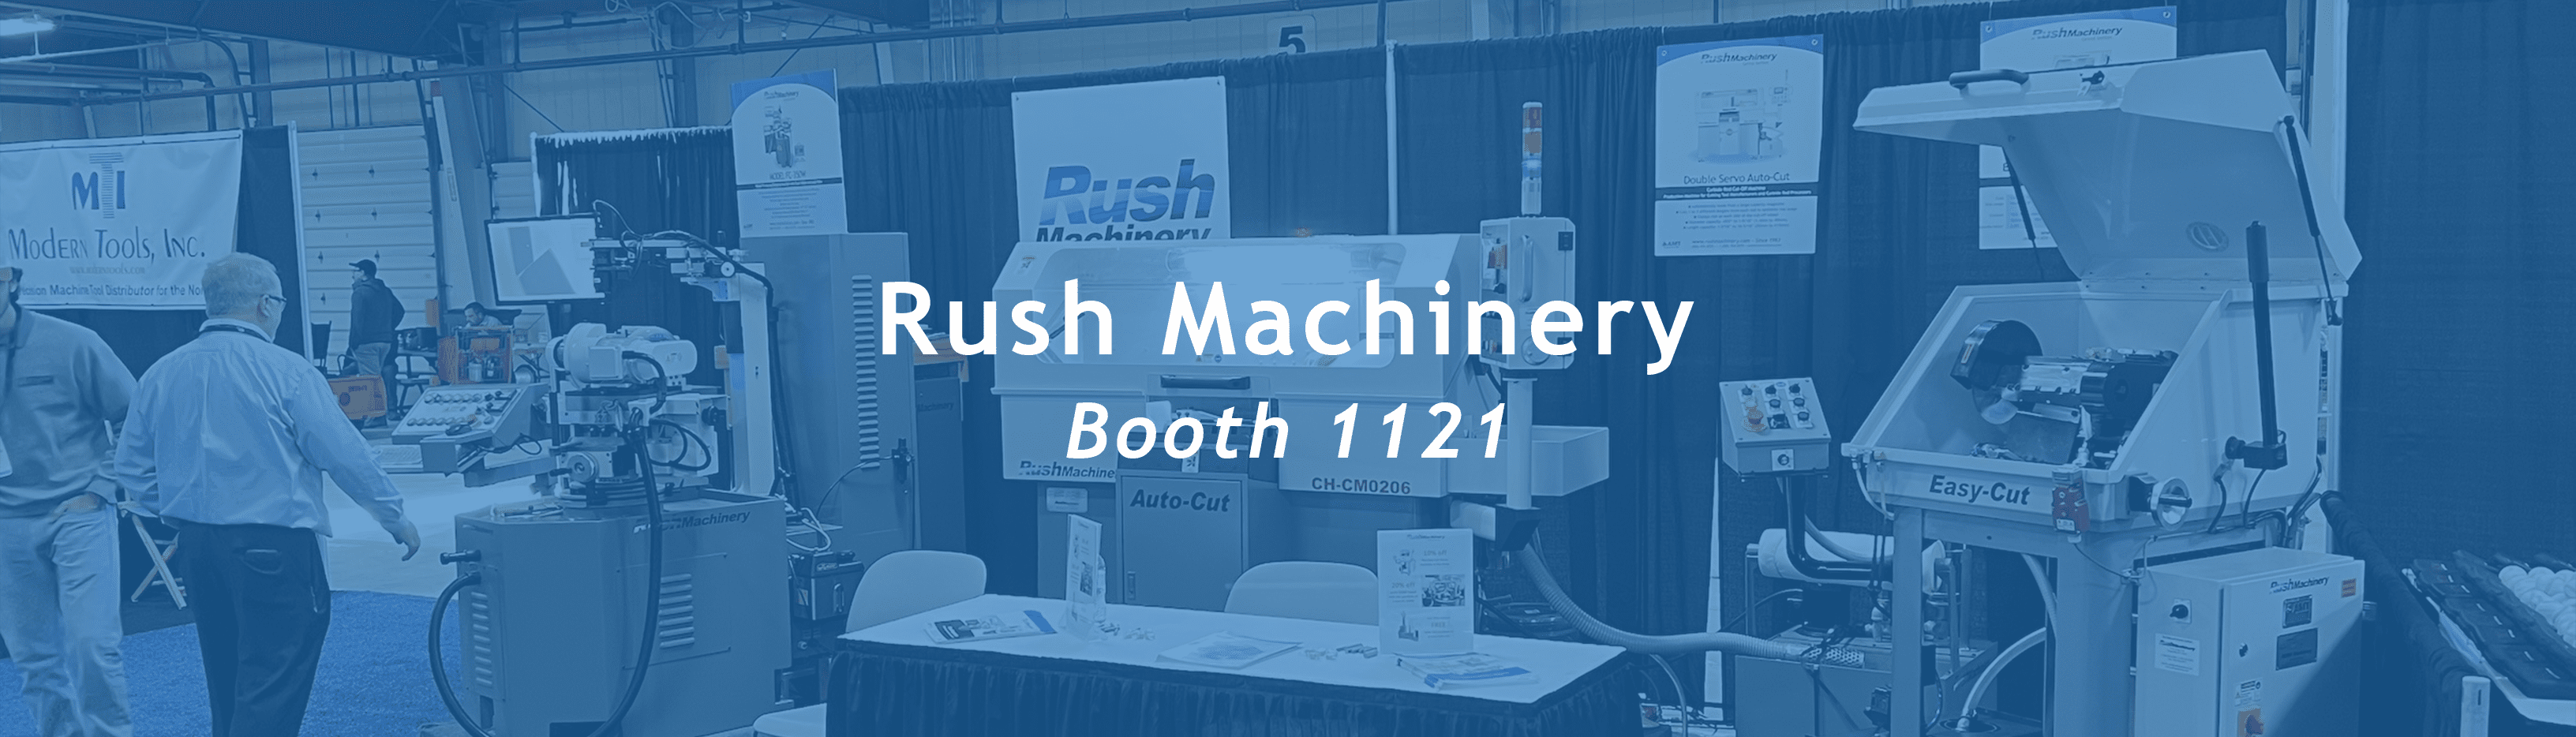 Rush Machinery Booth 1121